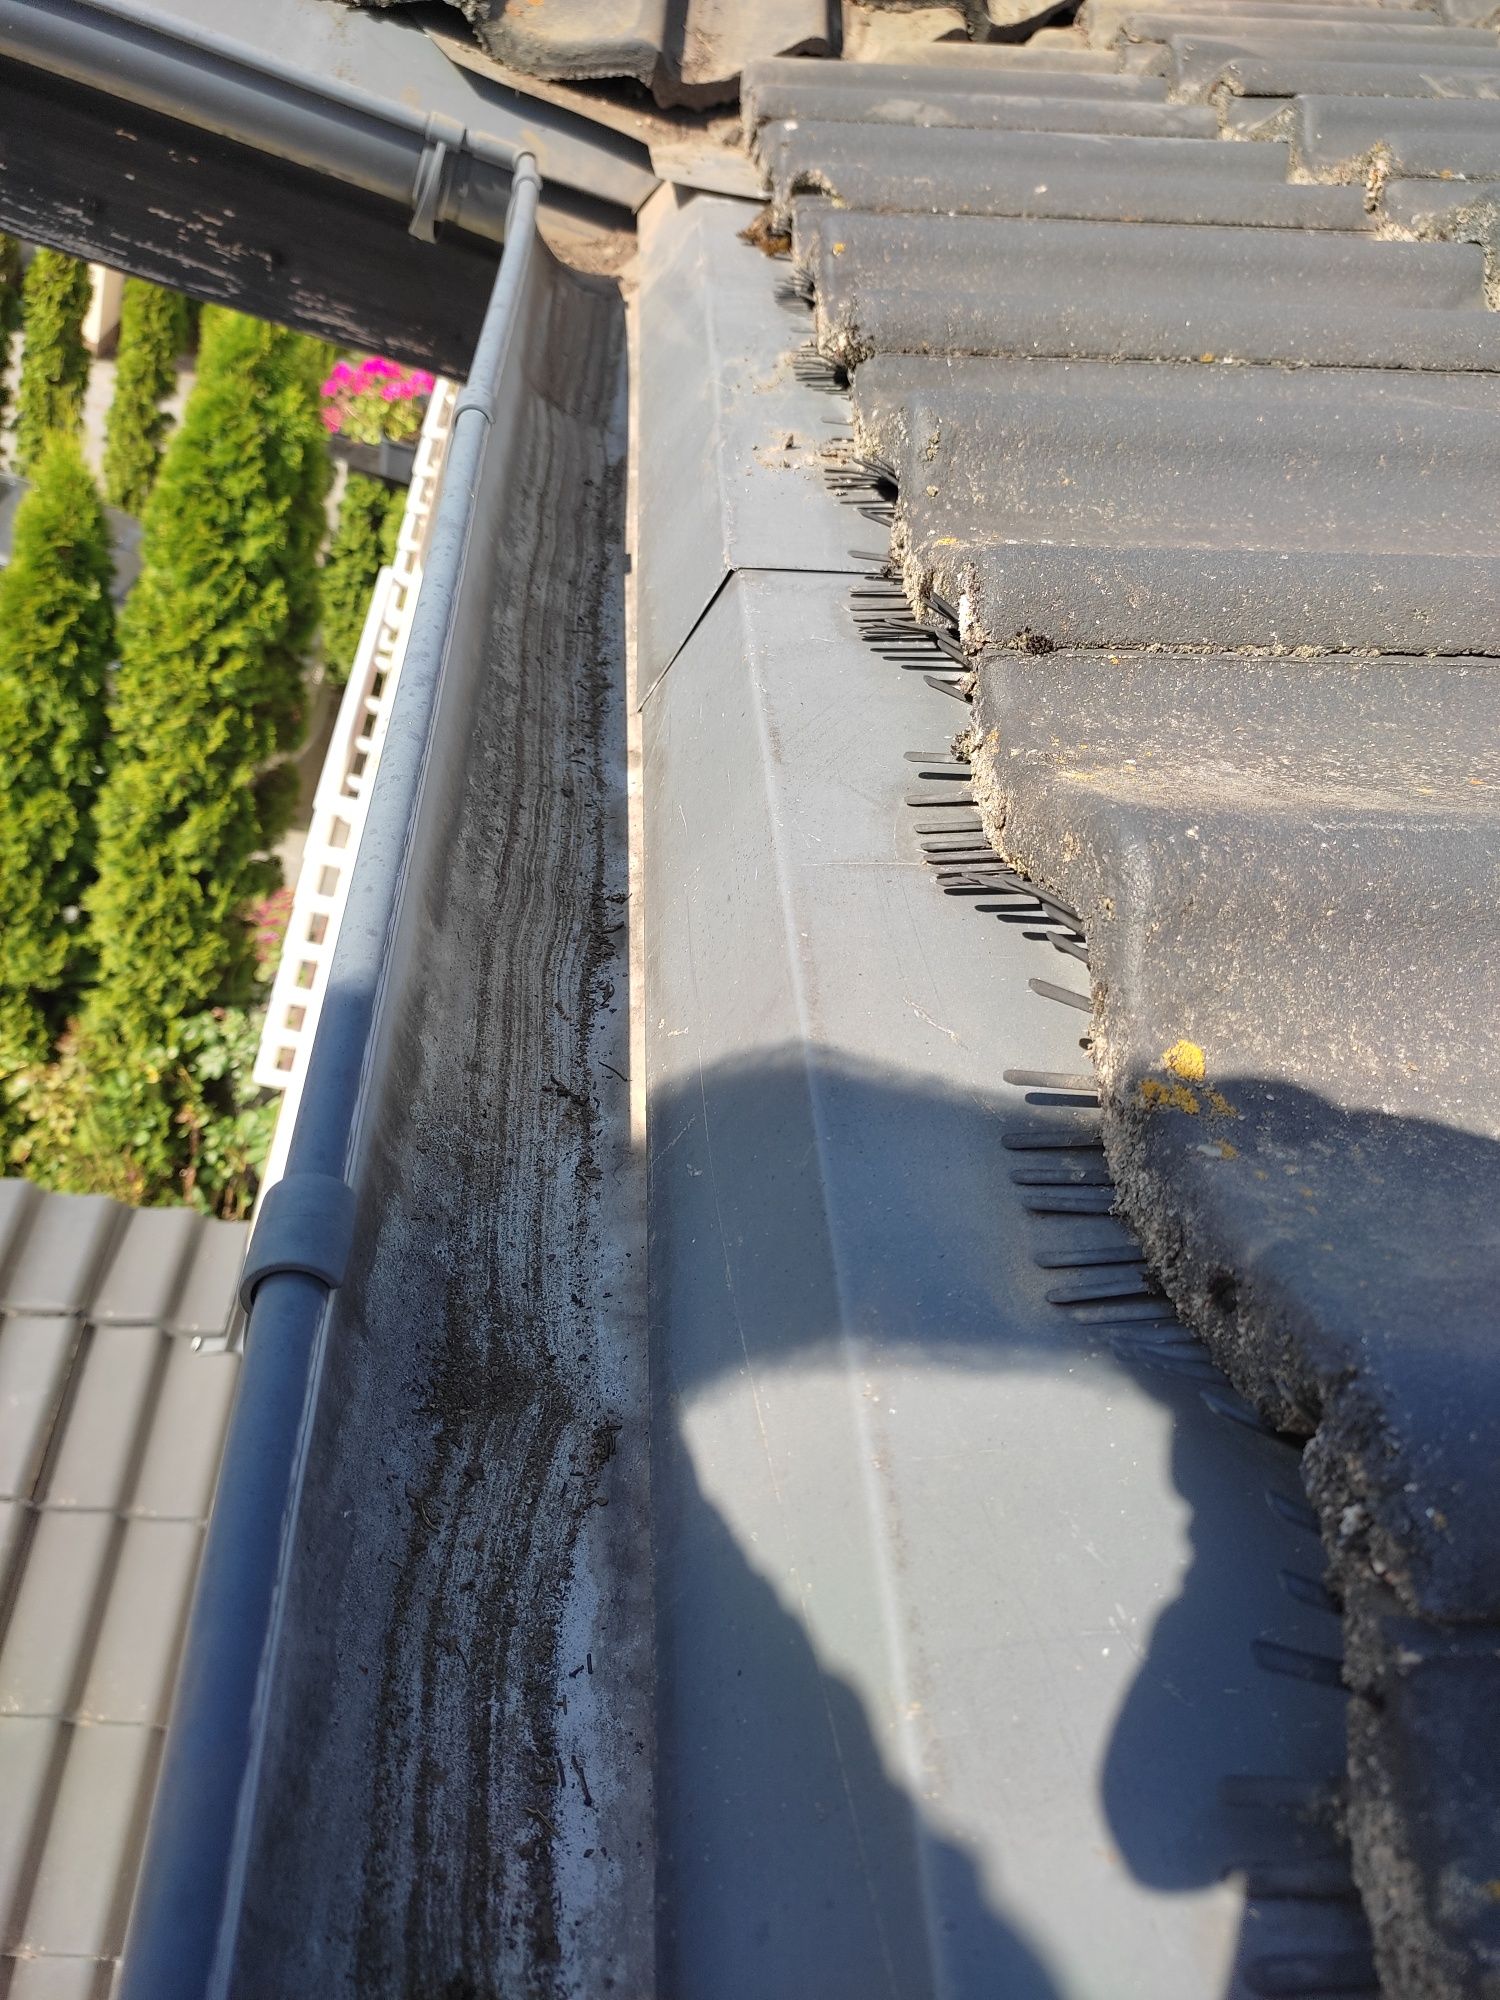 Czyszczenie rynien #czyszczenie dachu #dachówki #rynna #czyszczenie #u